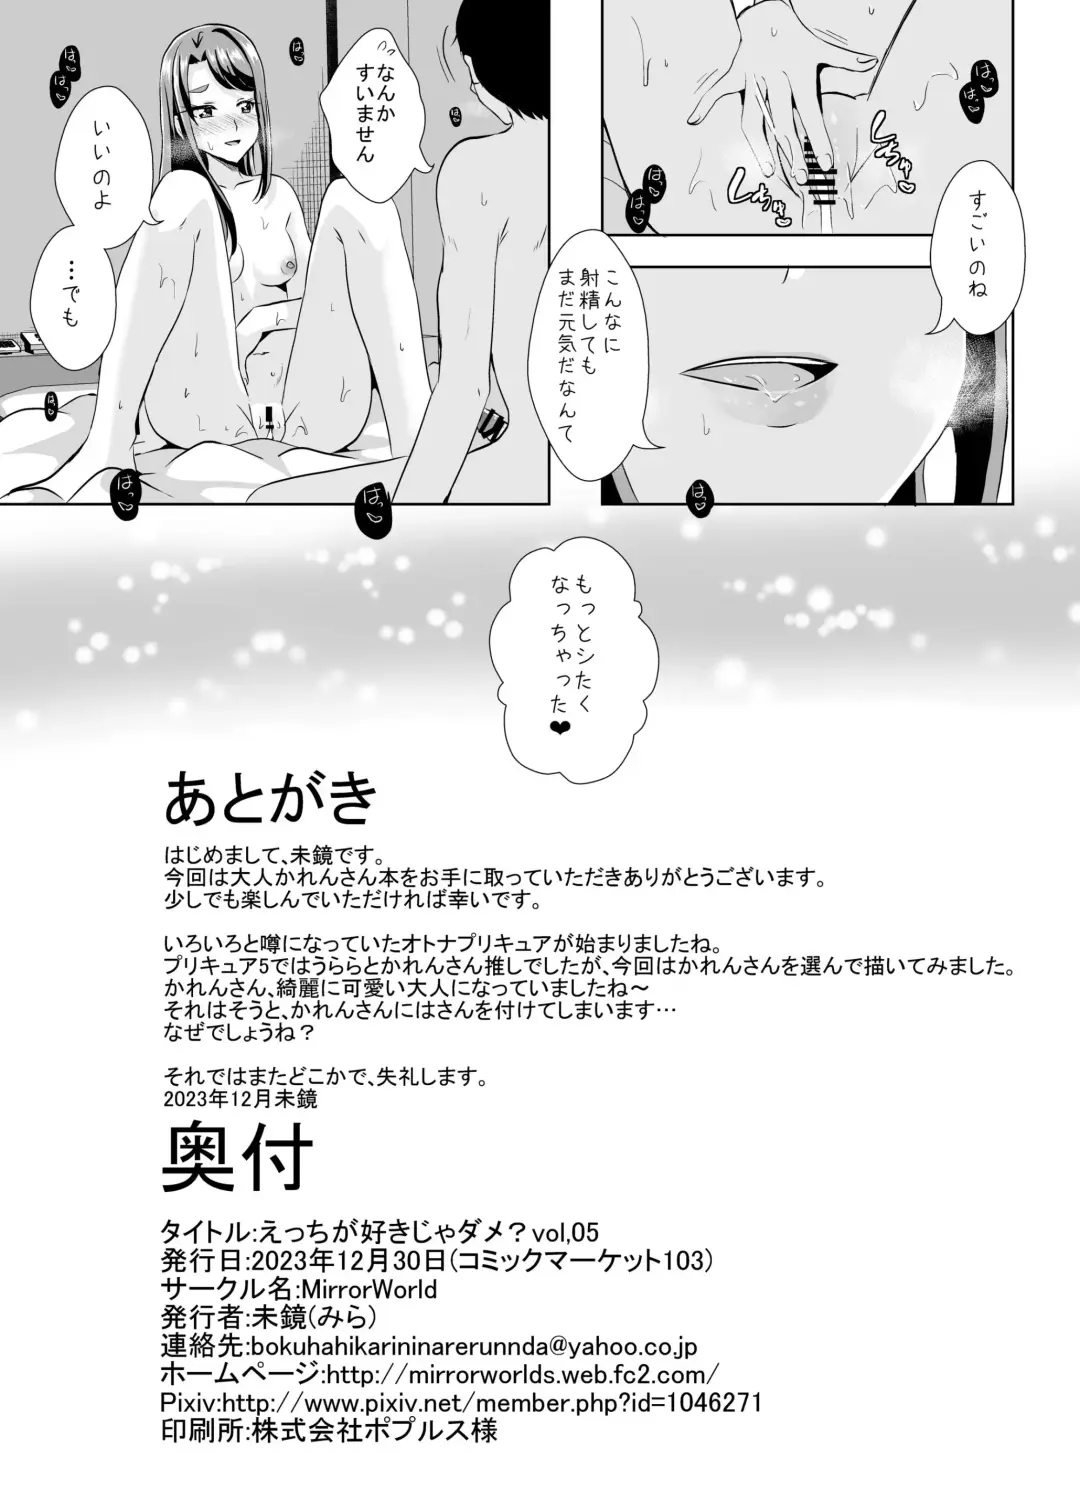 [Mira] Ecchi ga Suki ja Dame? Vol, 05 - Kibou no Chikara ~Otona Pretty Cure 23~ Fhentai.net - Page 15